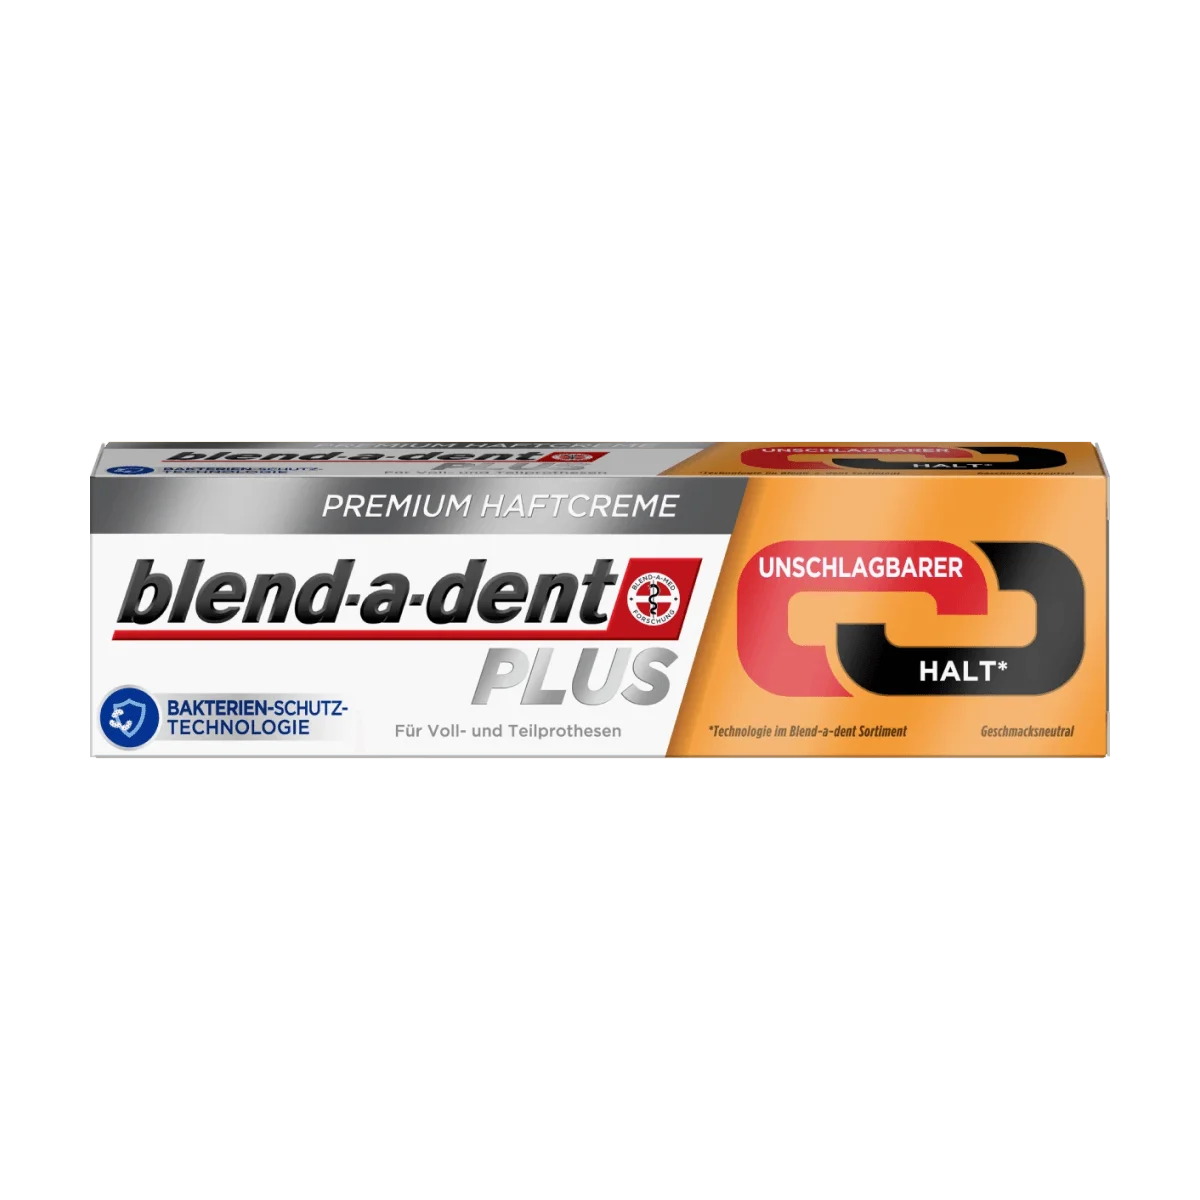 blend-a-dent Haftcreme unschlagbarer Halt, fluoridfrei, 40 g